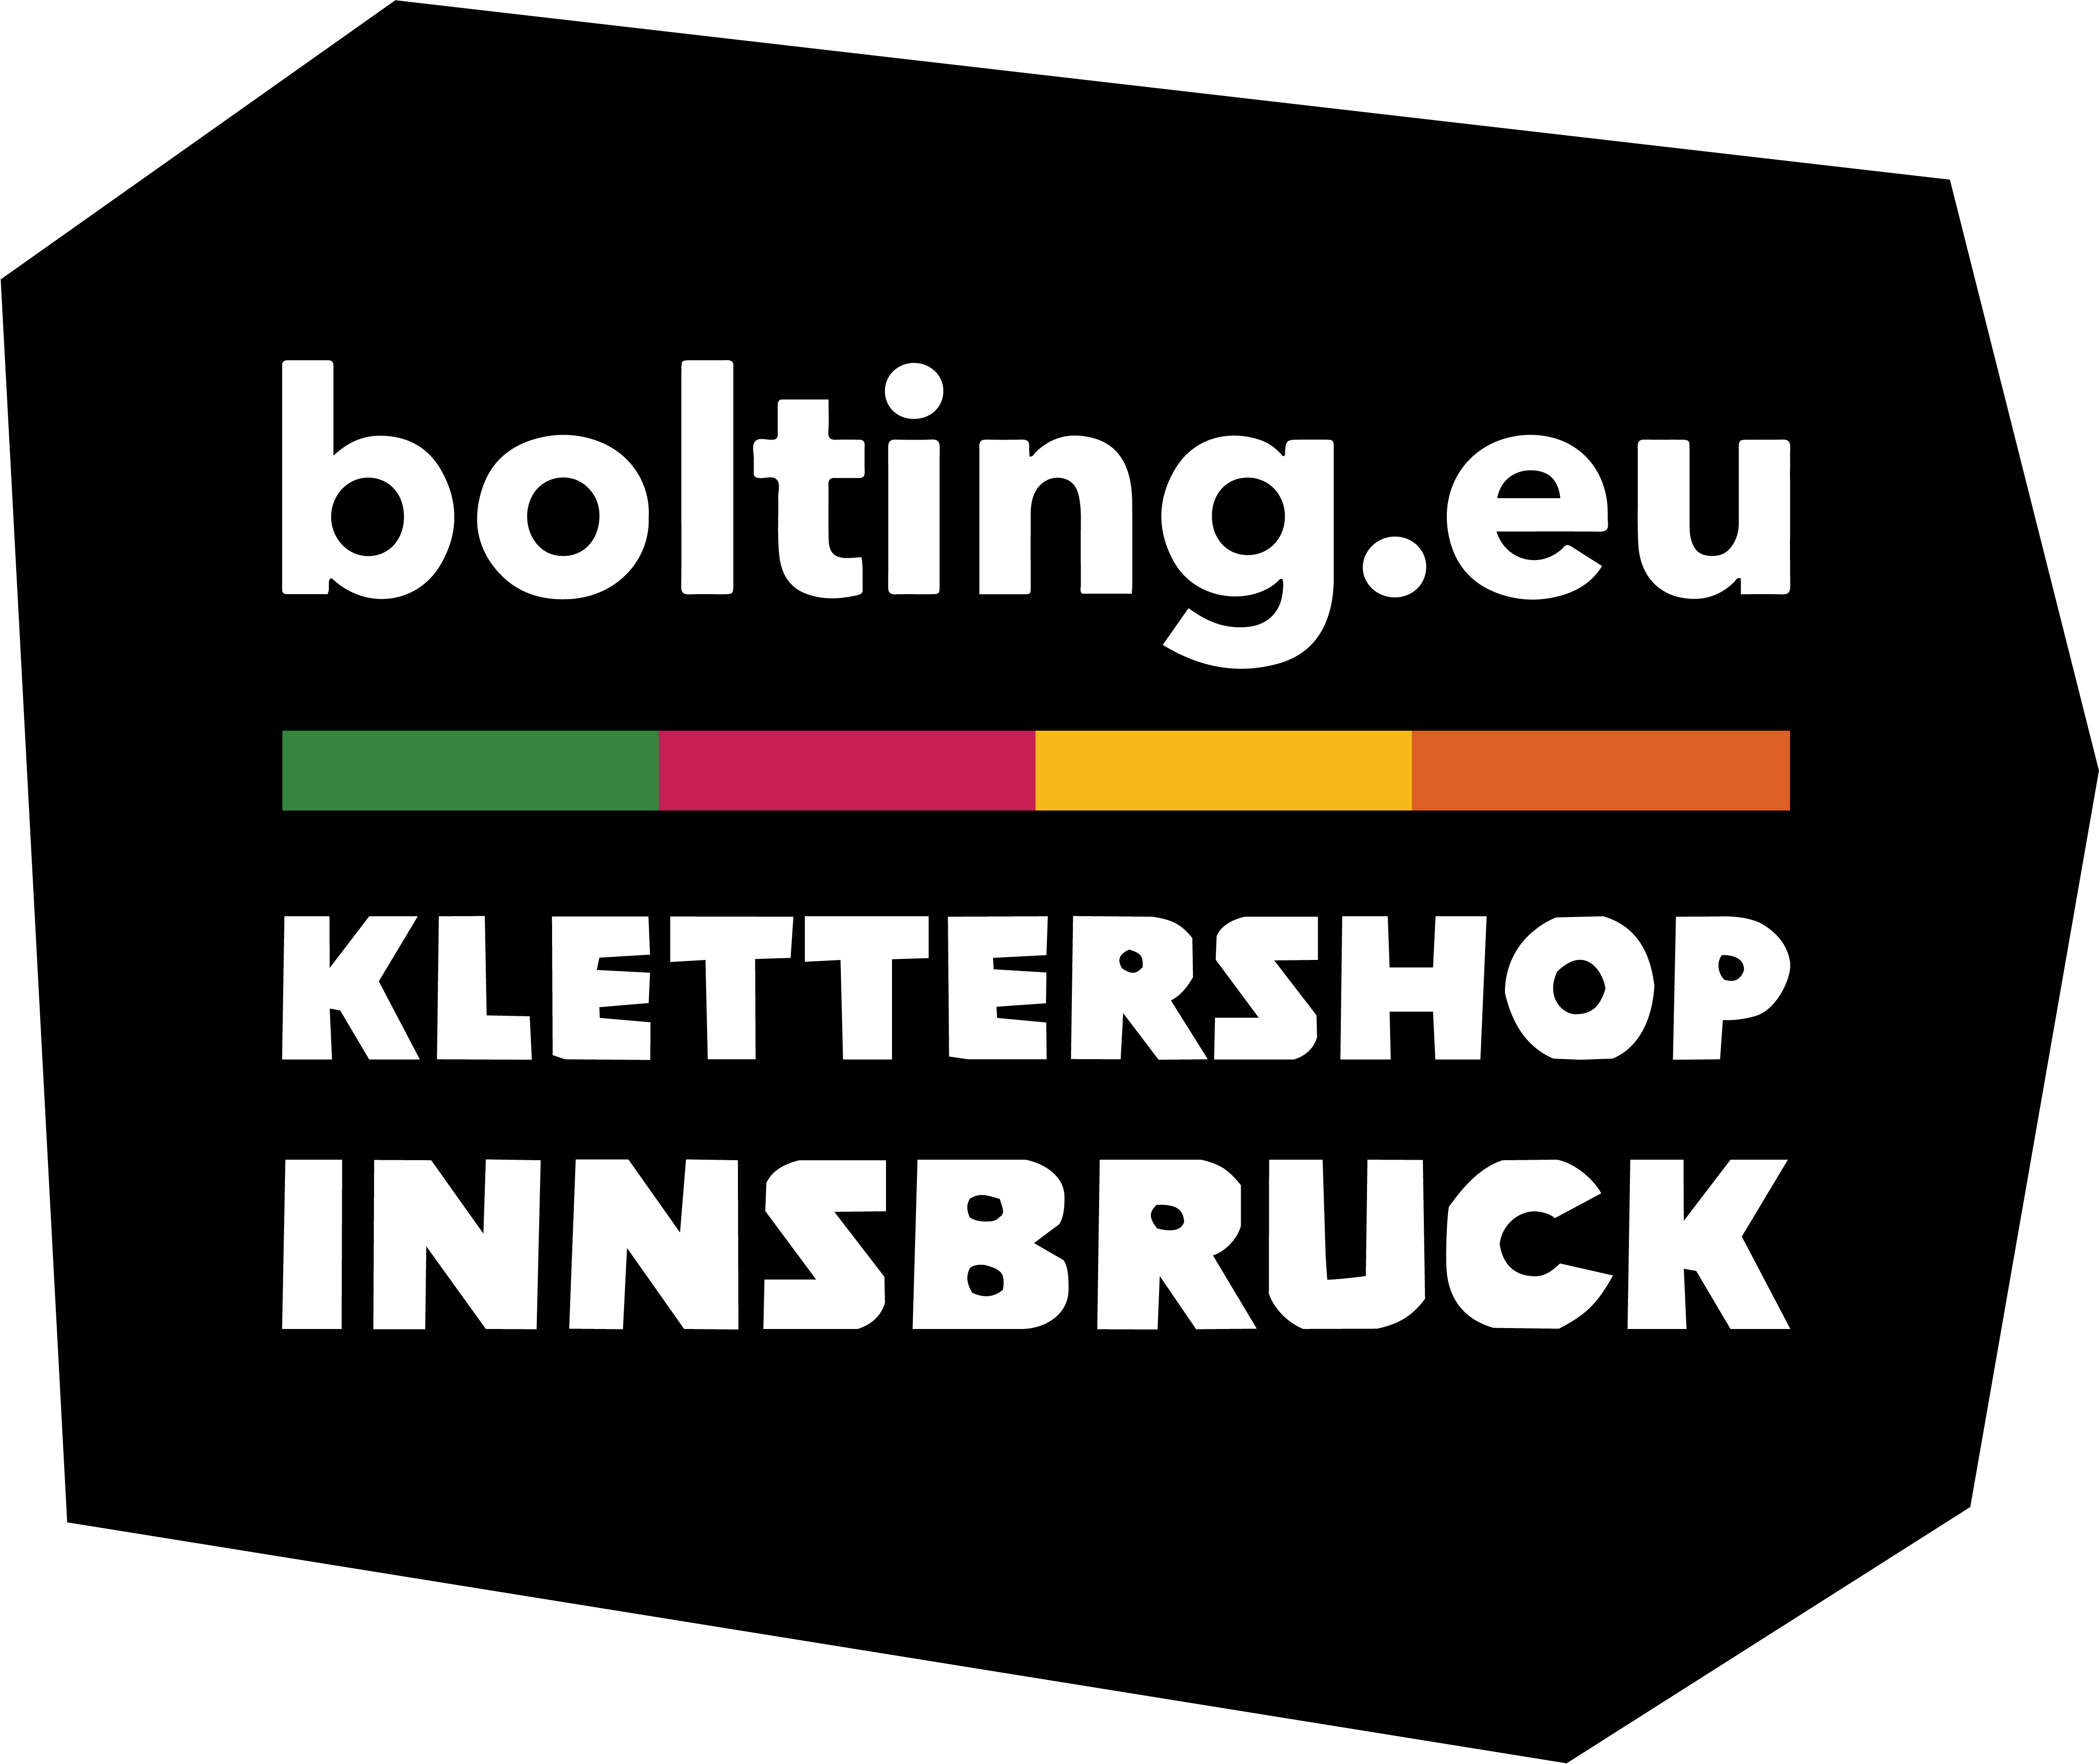 Logo des bolting.eu Klettershop Innsbruck in schwarz mit bunten Elementen.